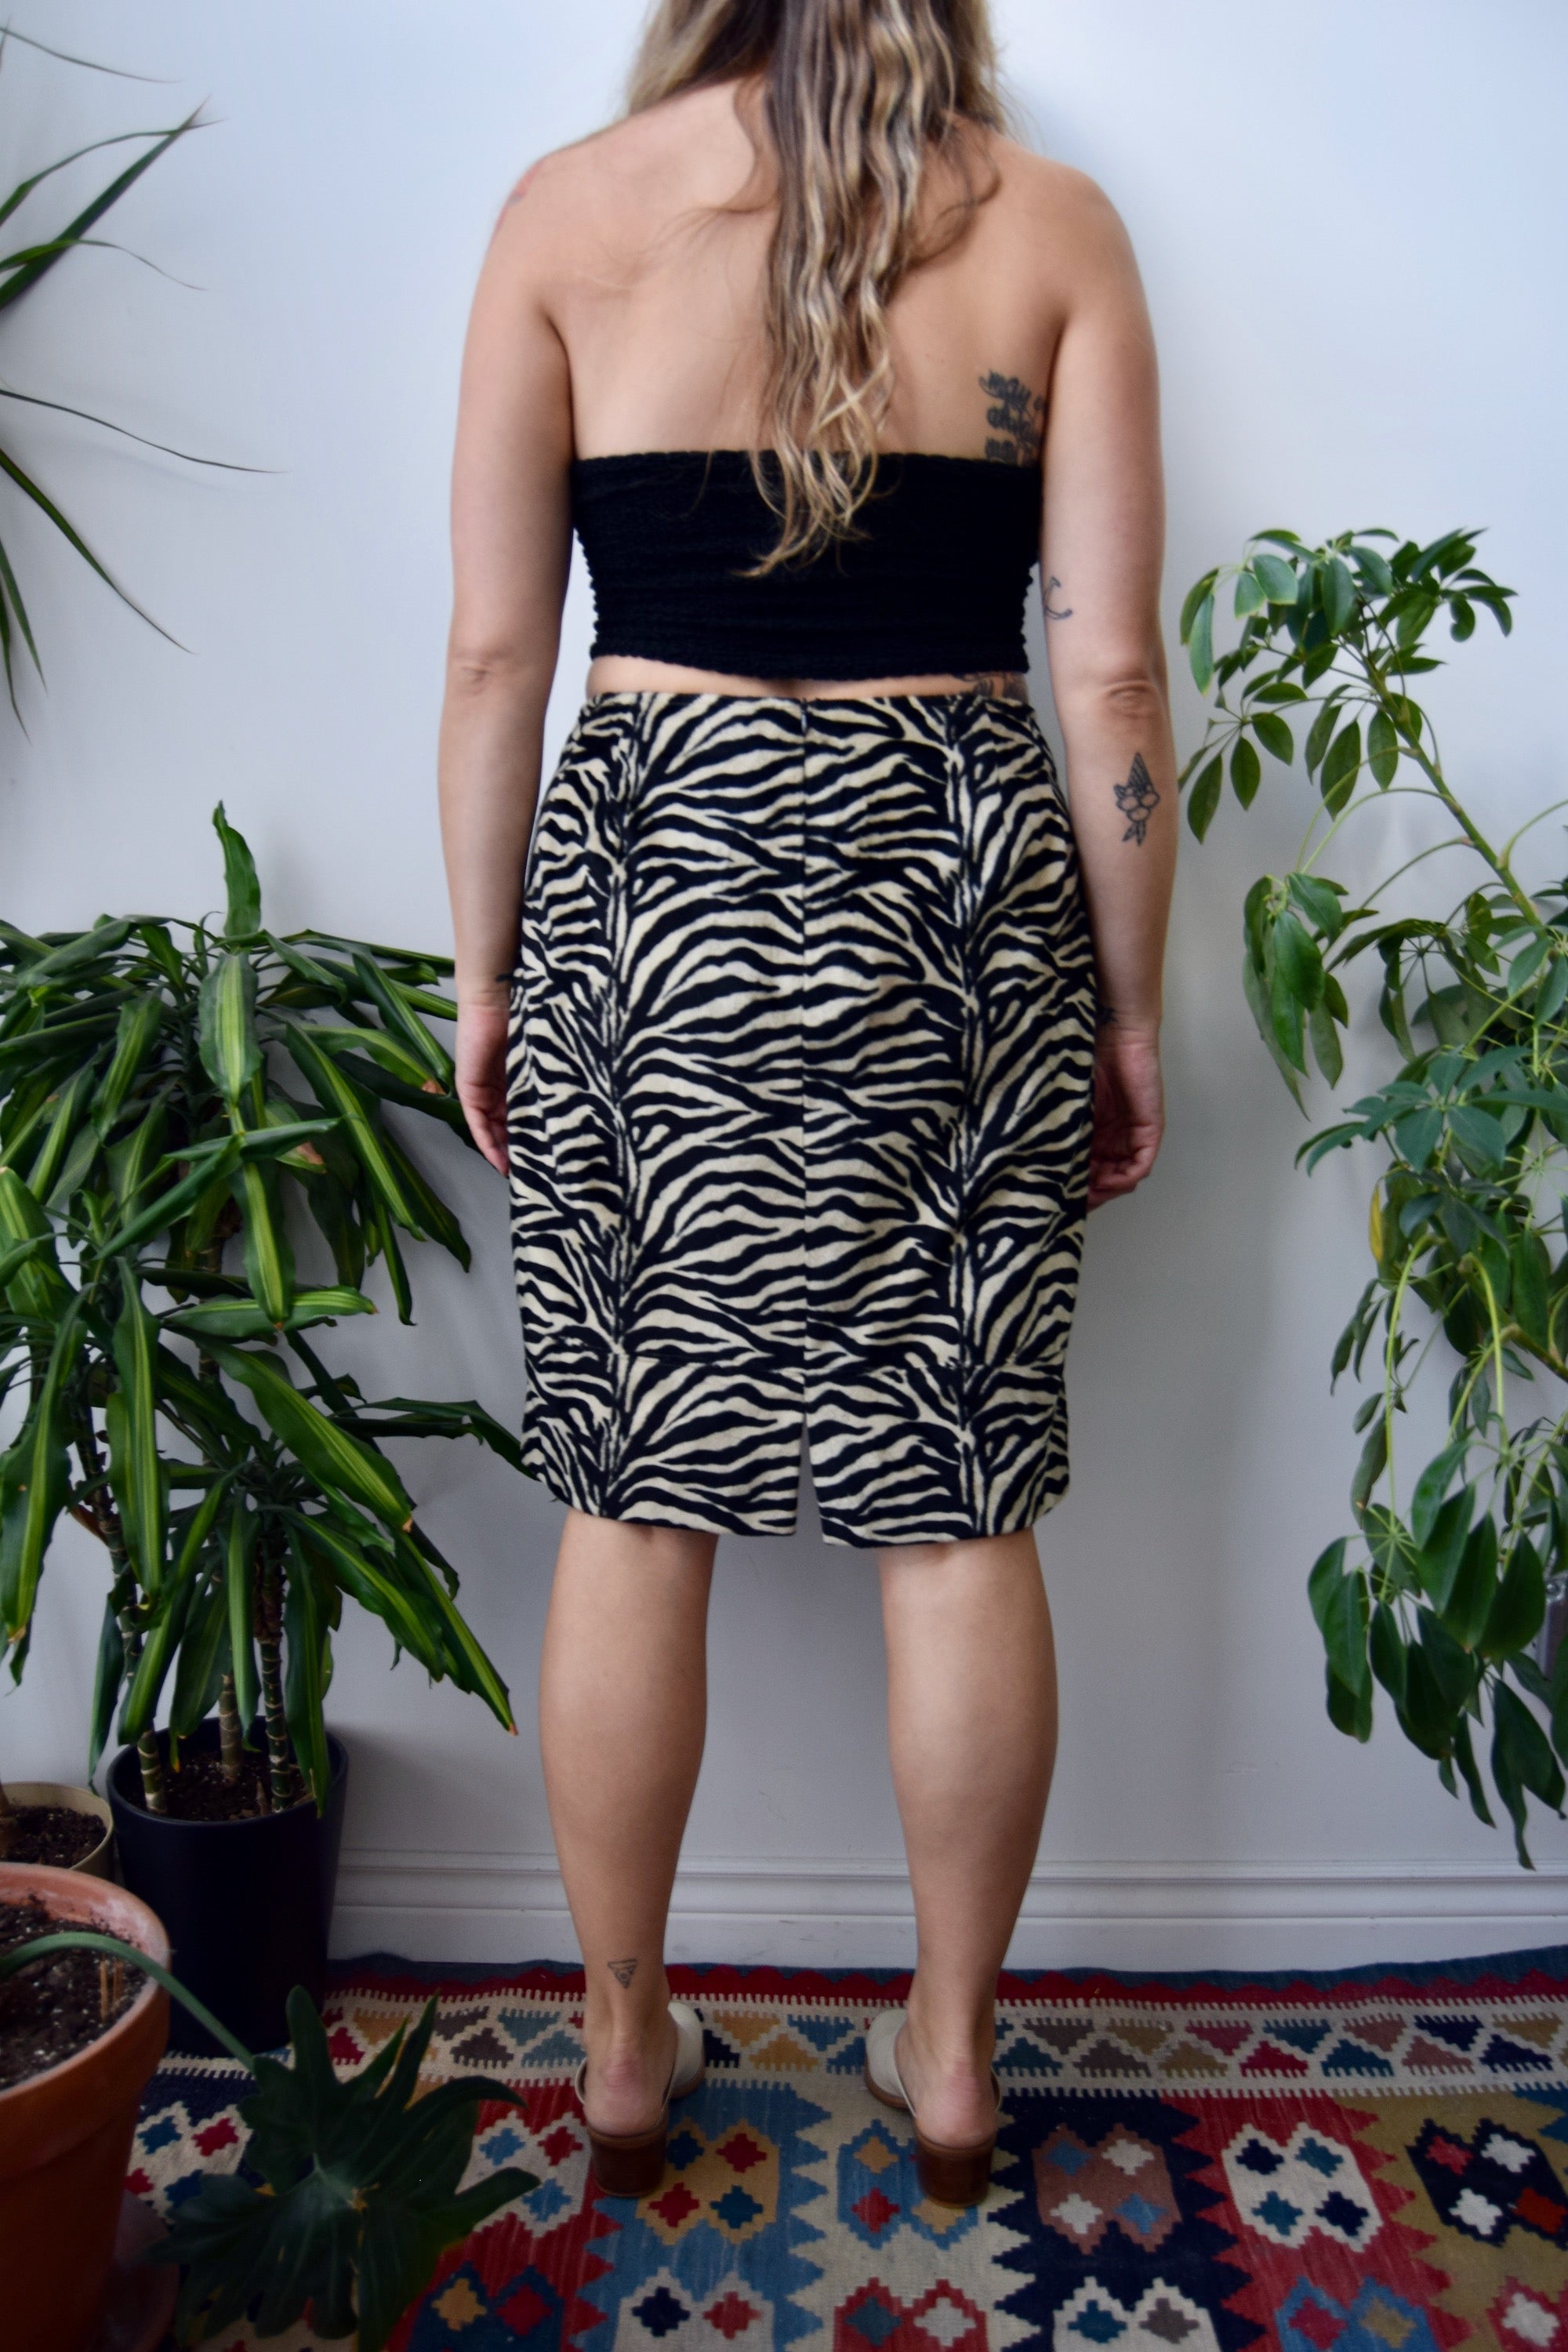 Zebra Fun Fur Skirt